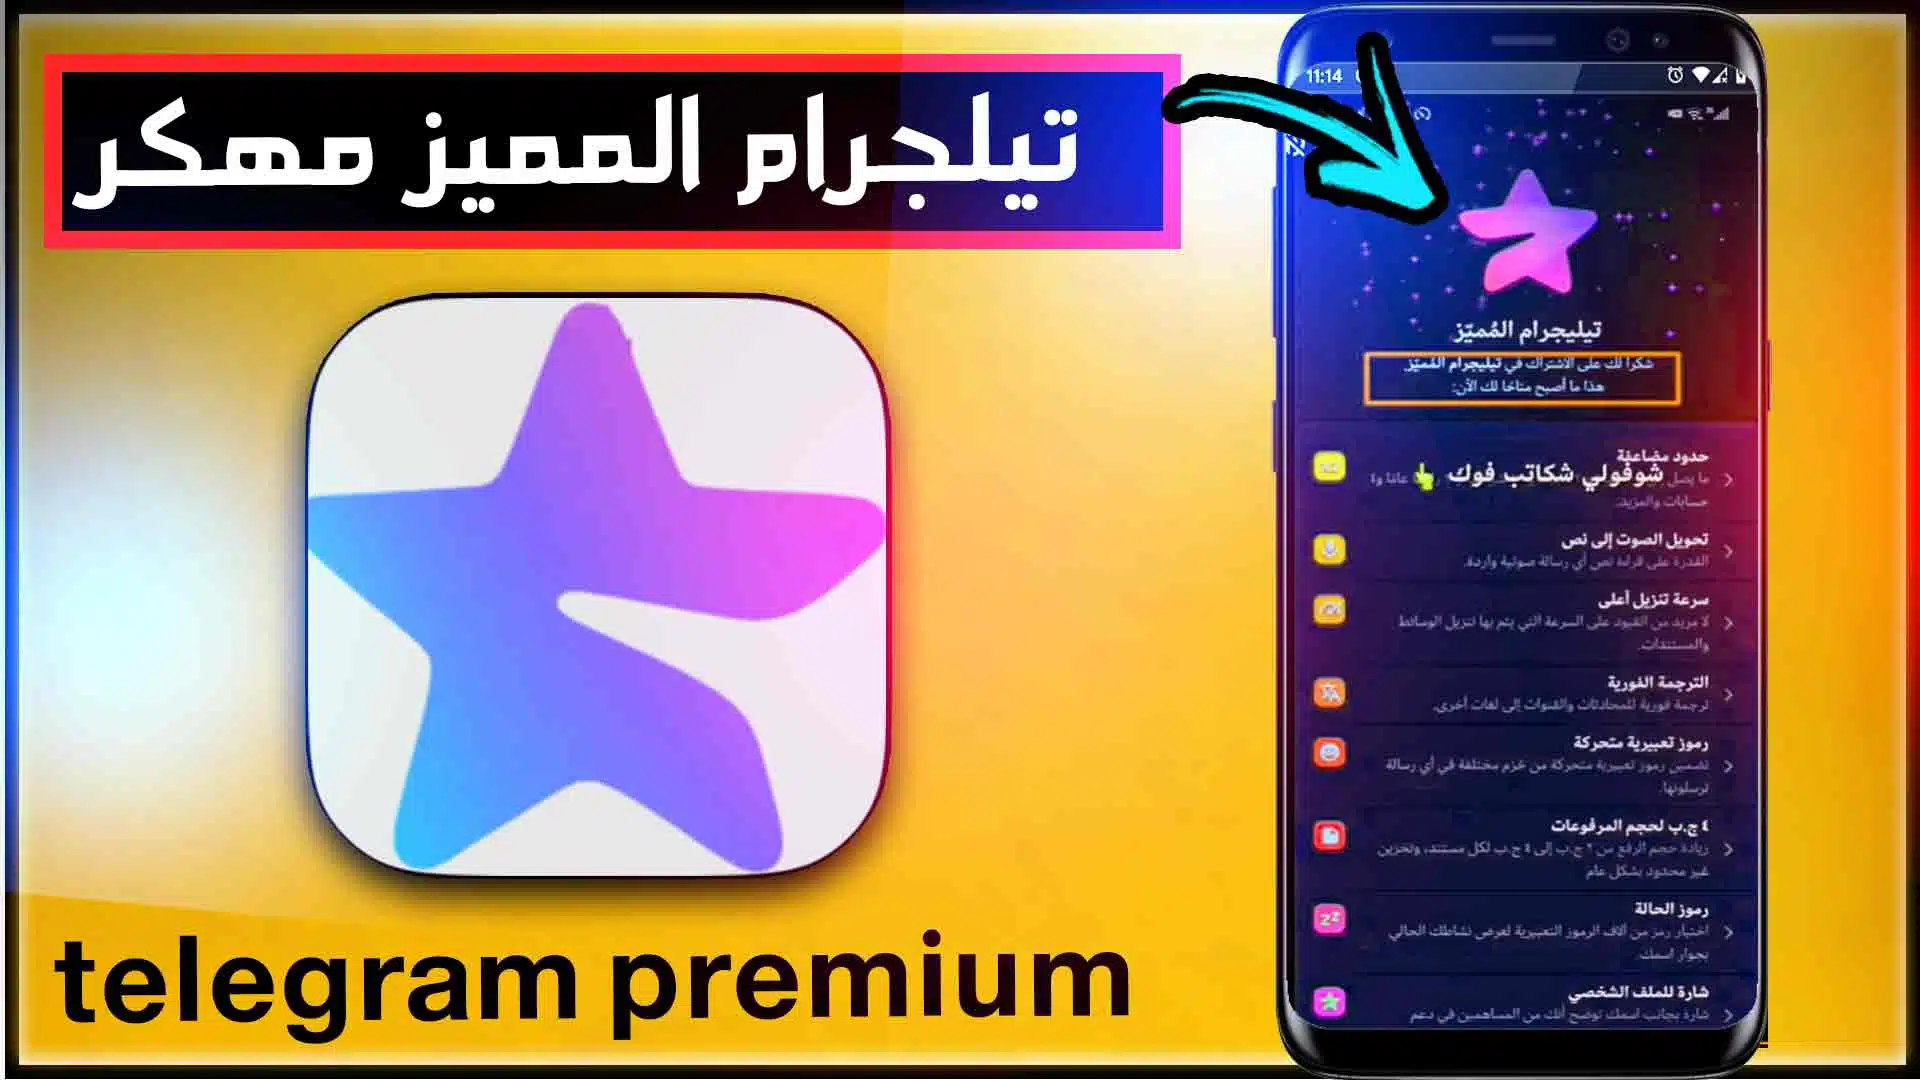 تحميل تليجرام المميز مجانا مهكر بريميوم telegram premium 2024 1